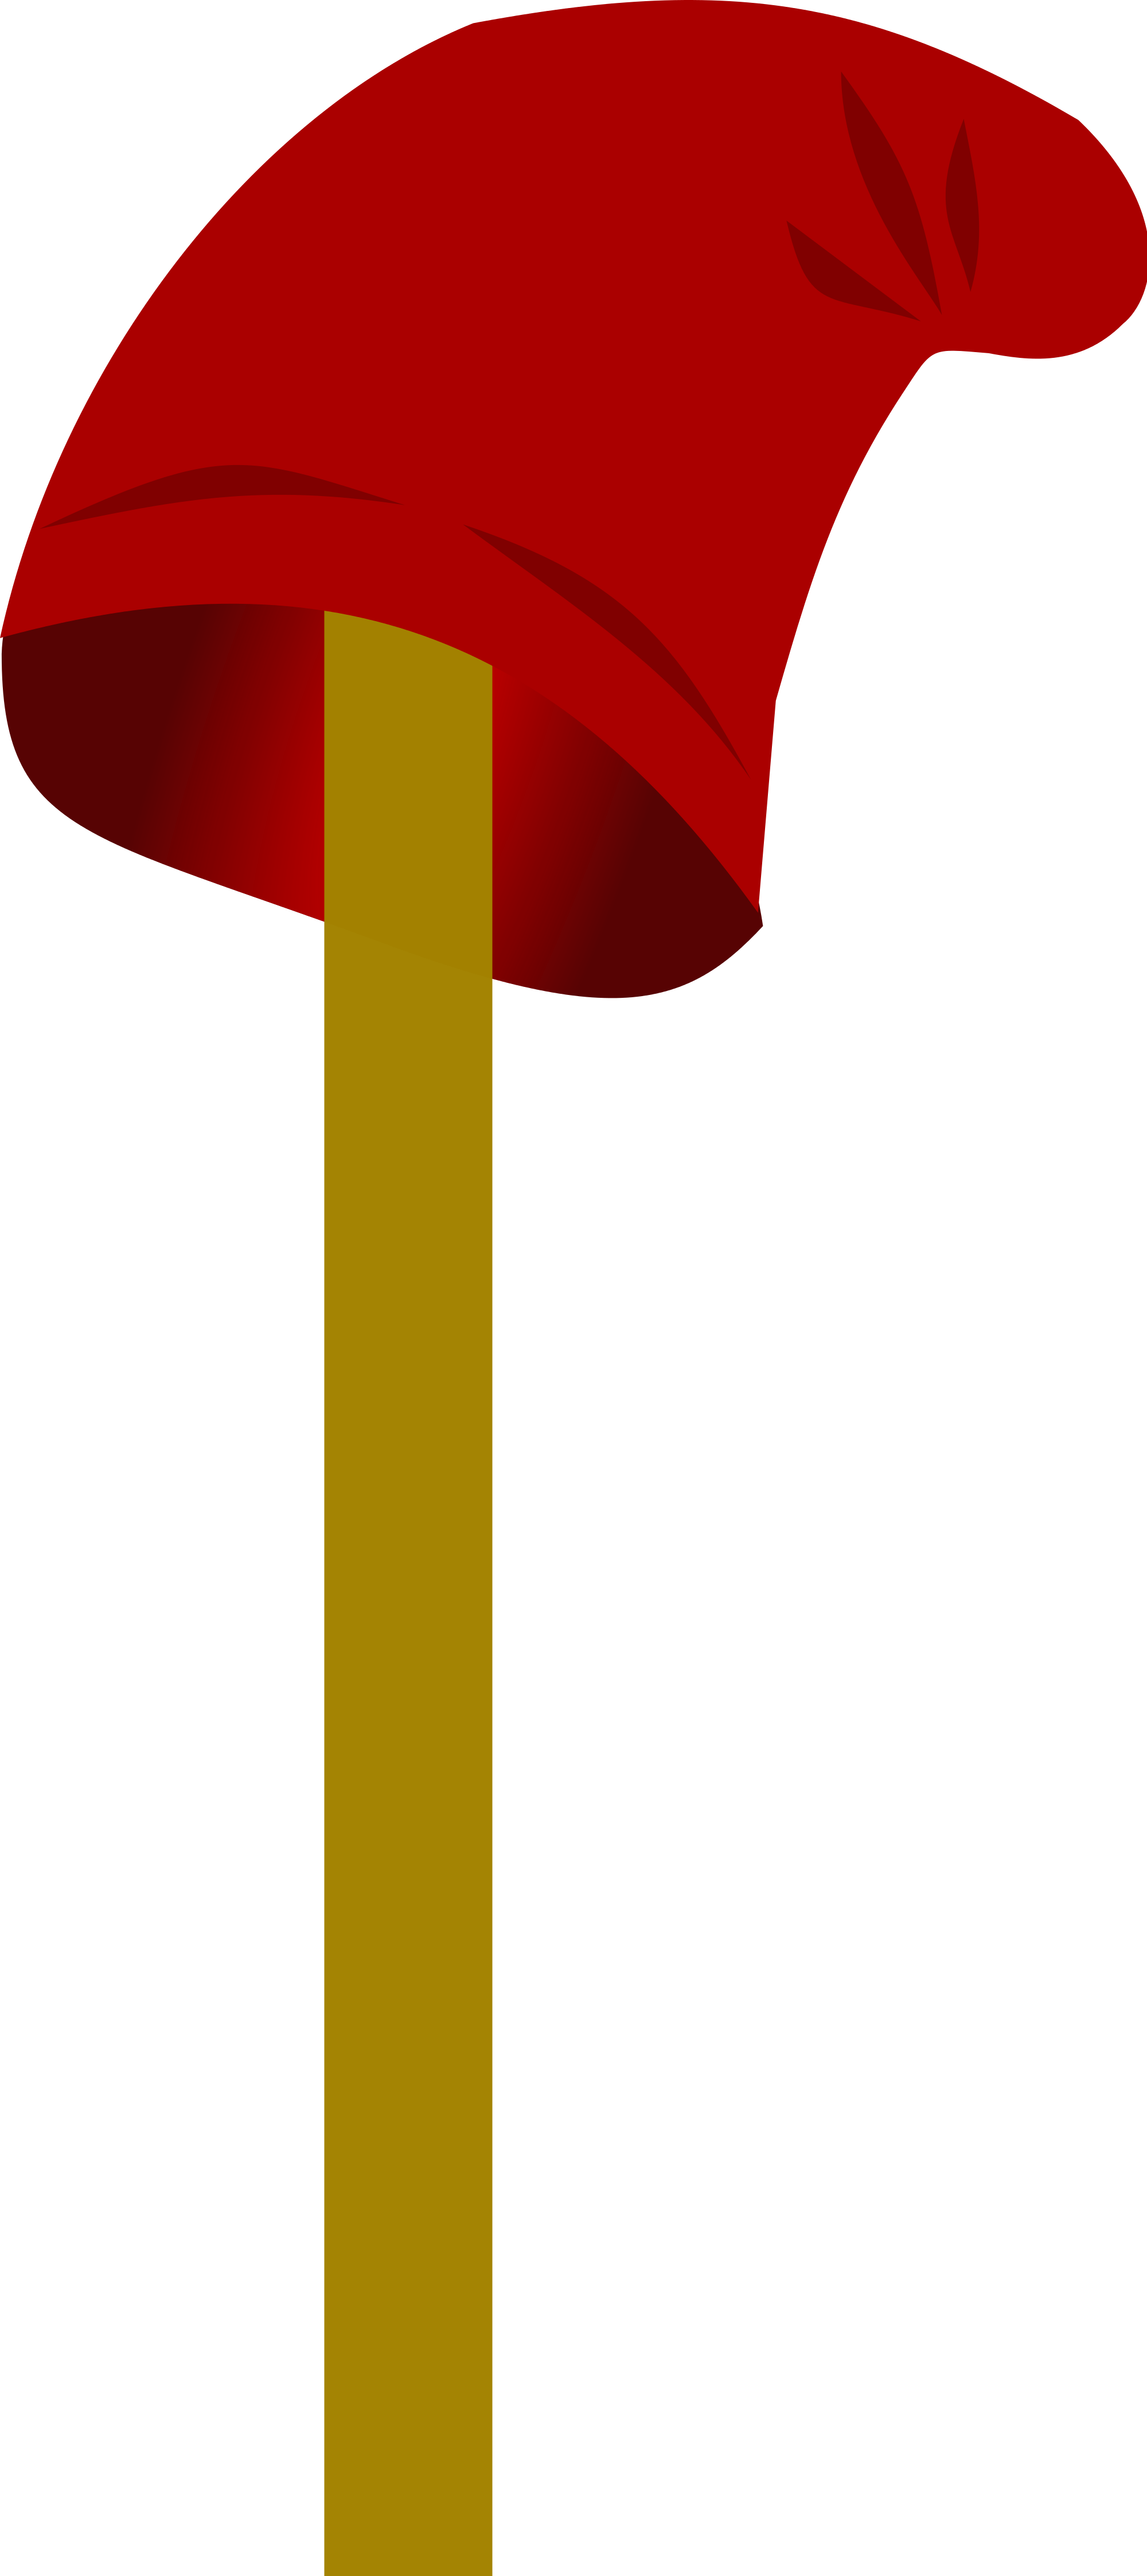 Open - Phrygian Cap On Pole (2000x4492)